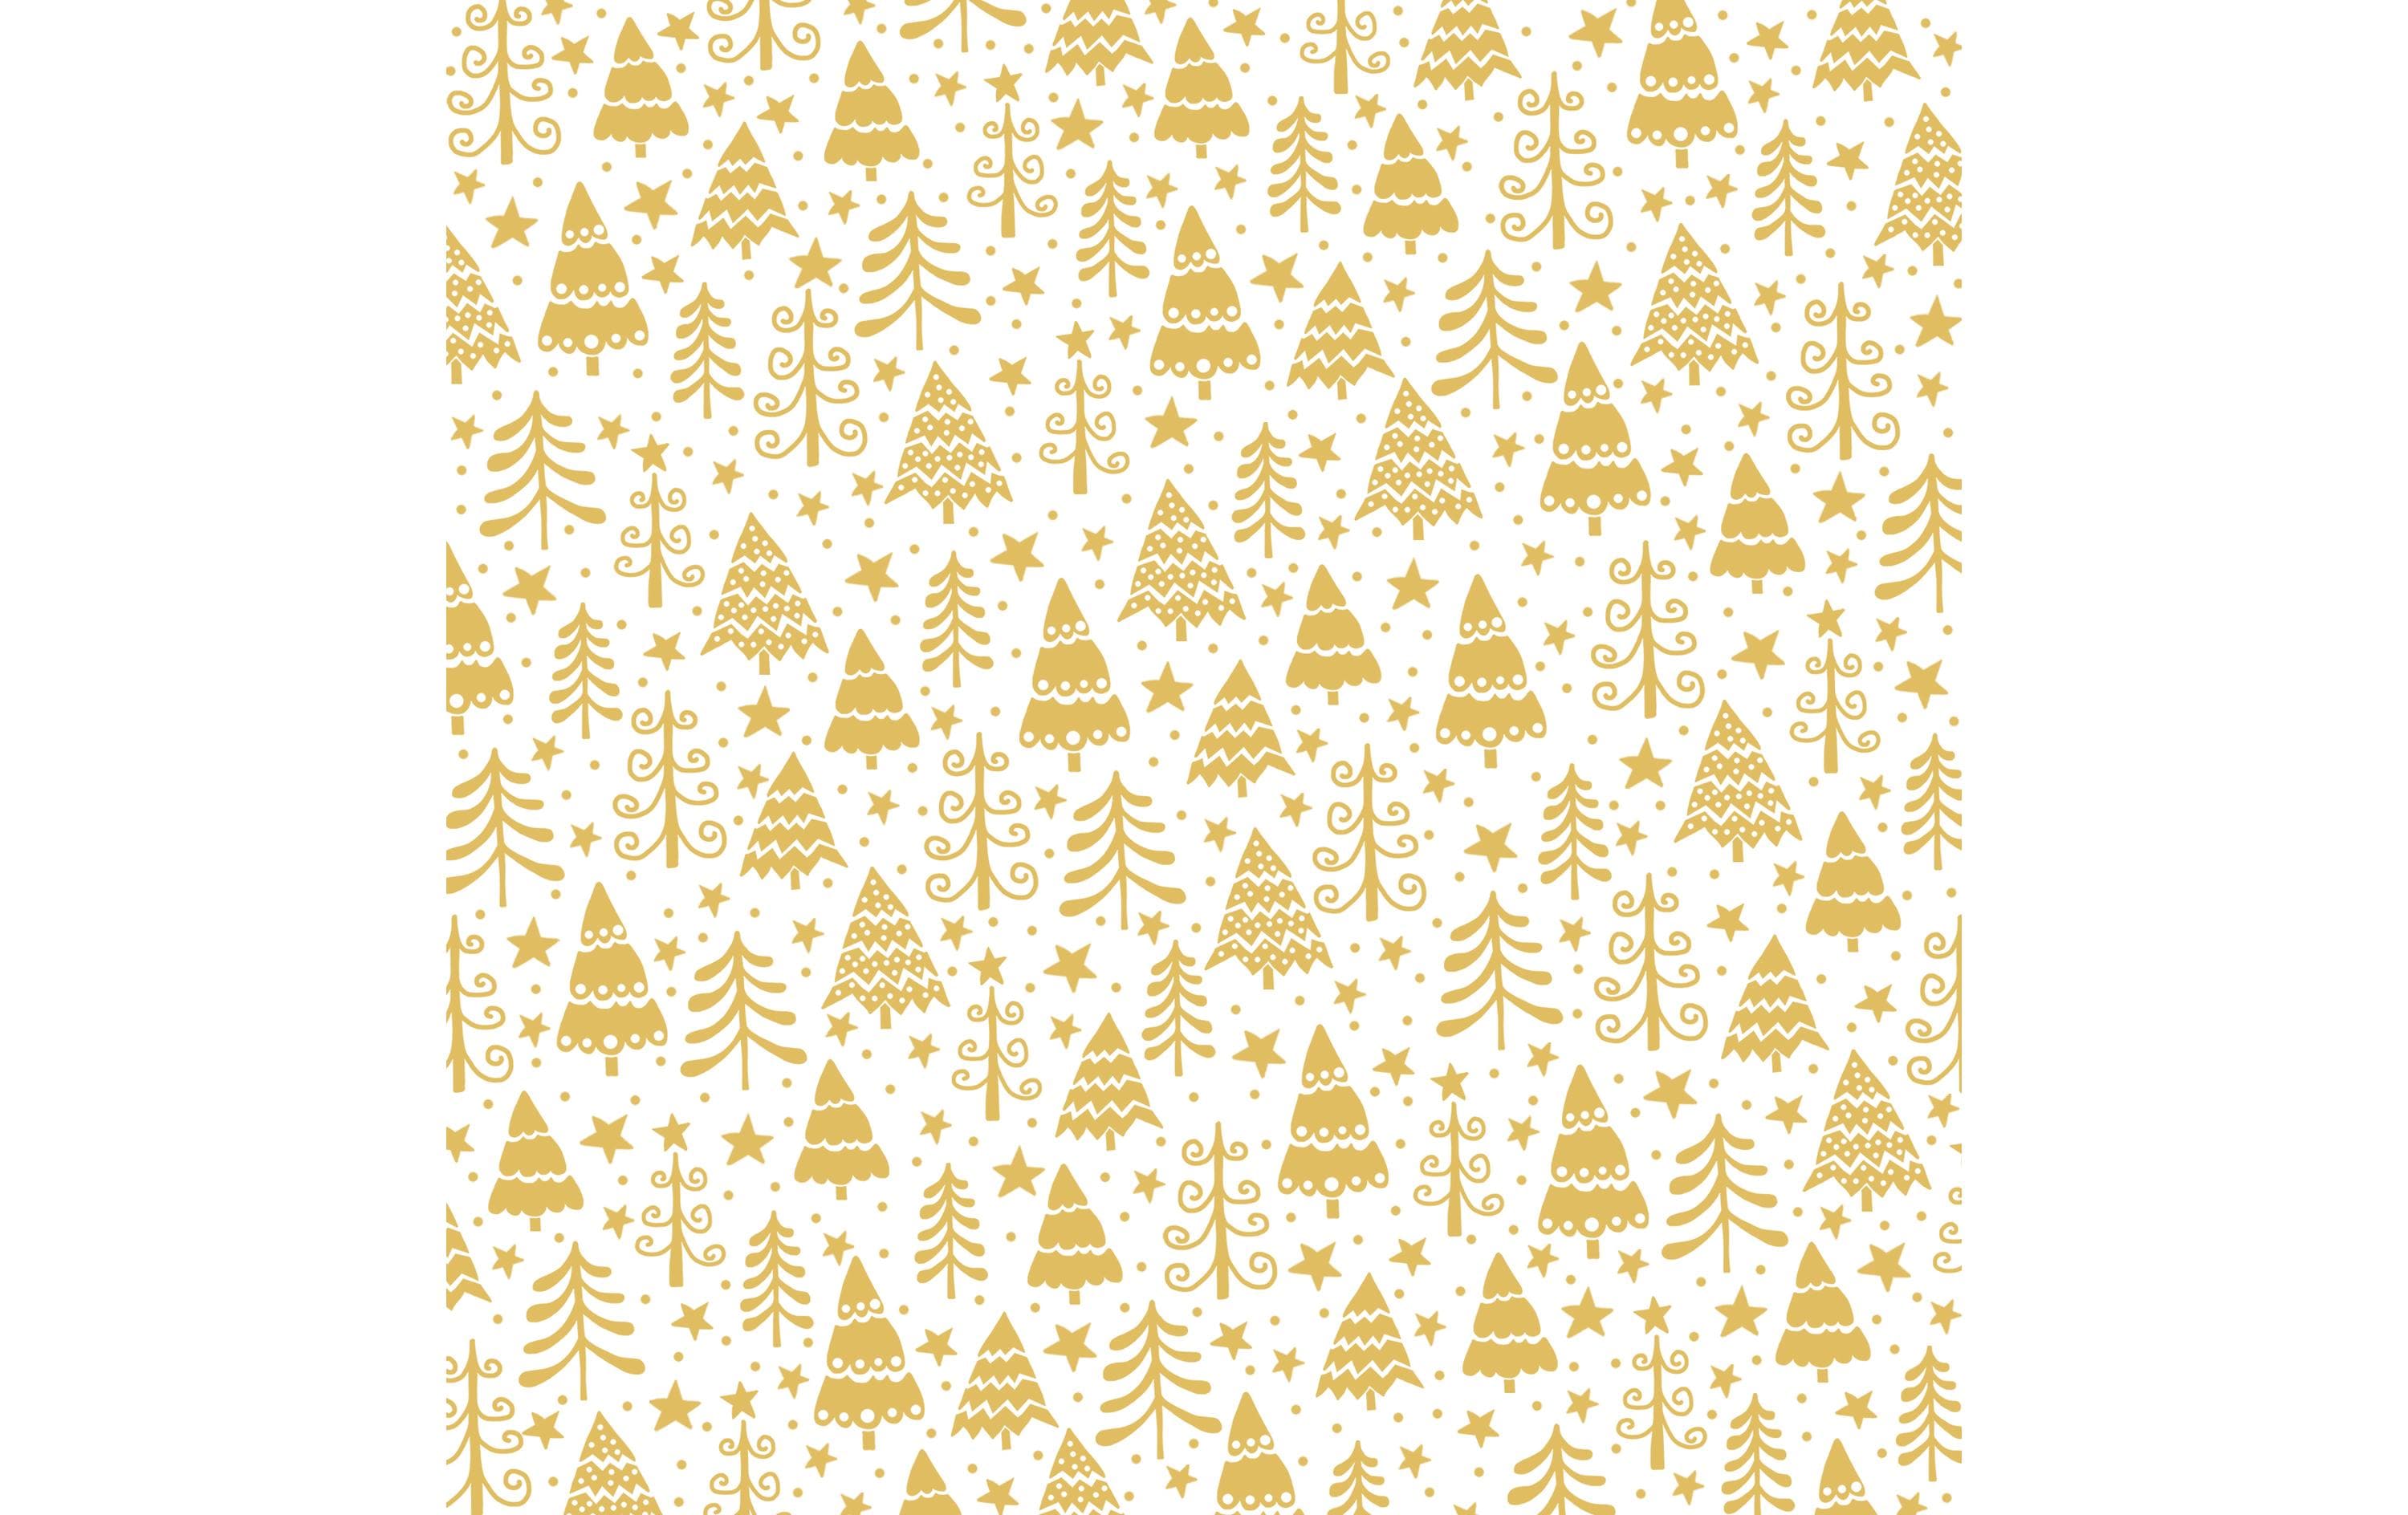 Braun + Company Weihnachtsservietten Golden Forest 33 cm x 33 cm, 20 Stück